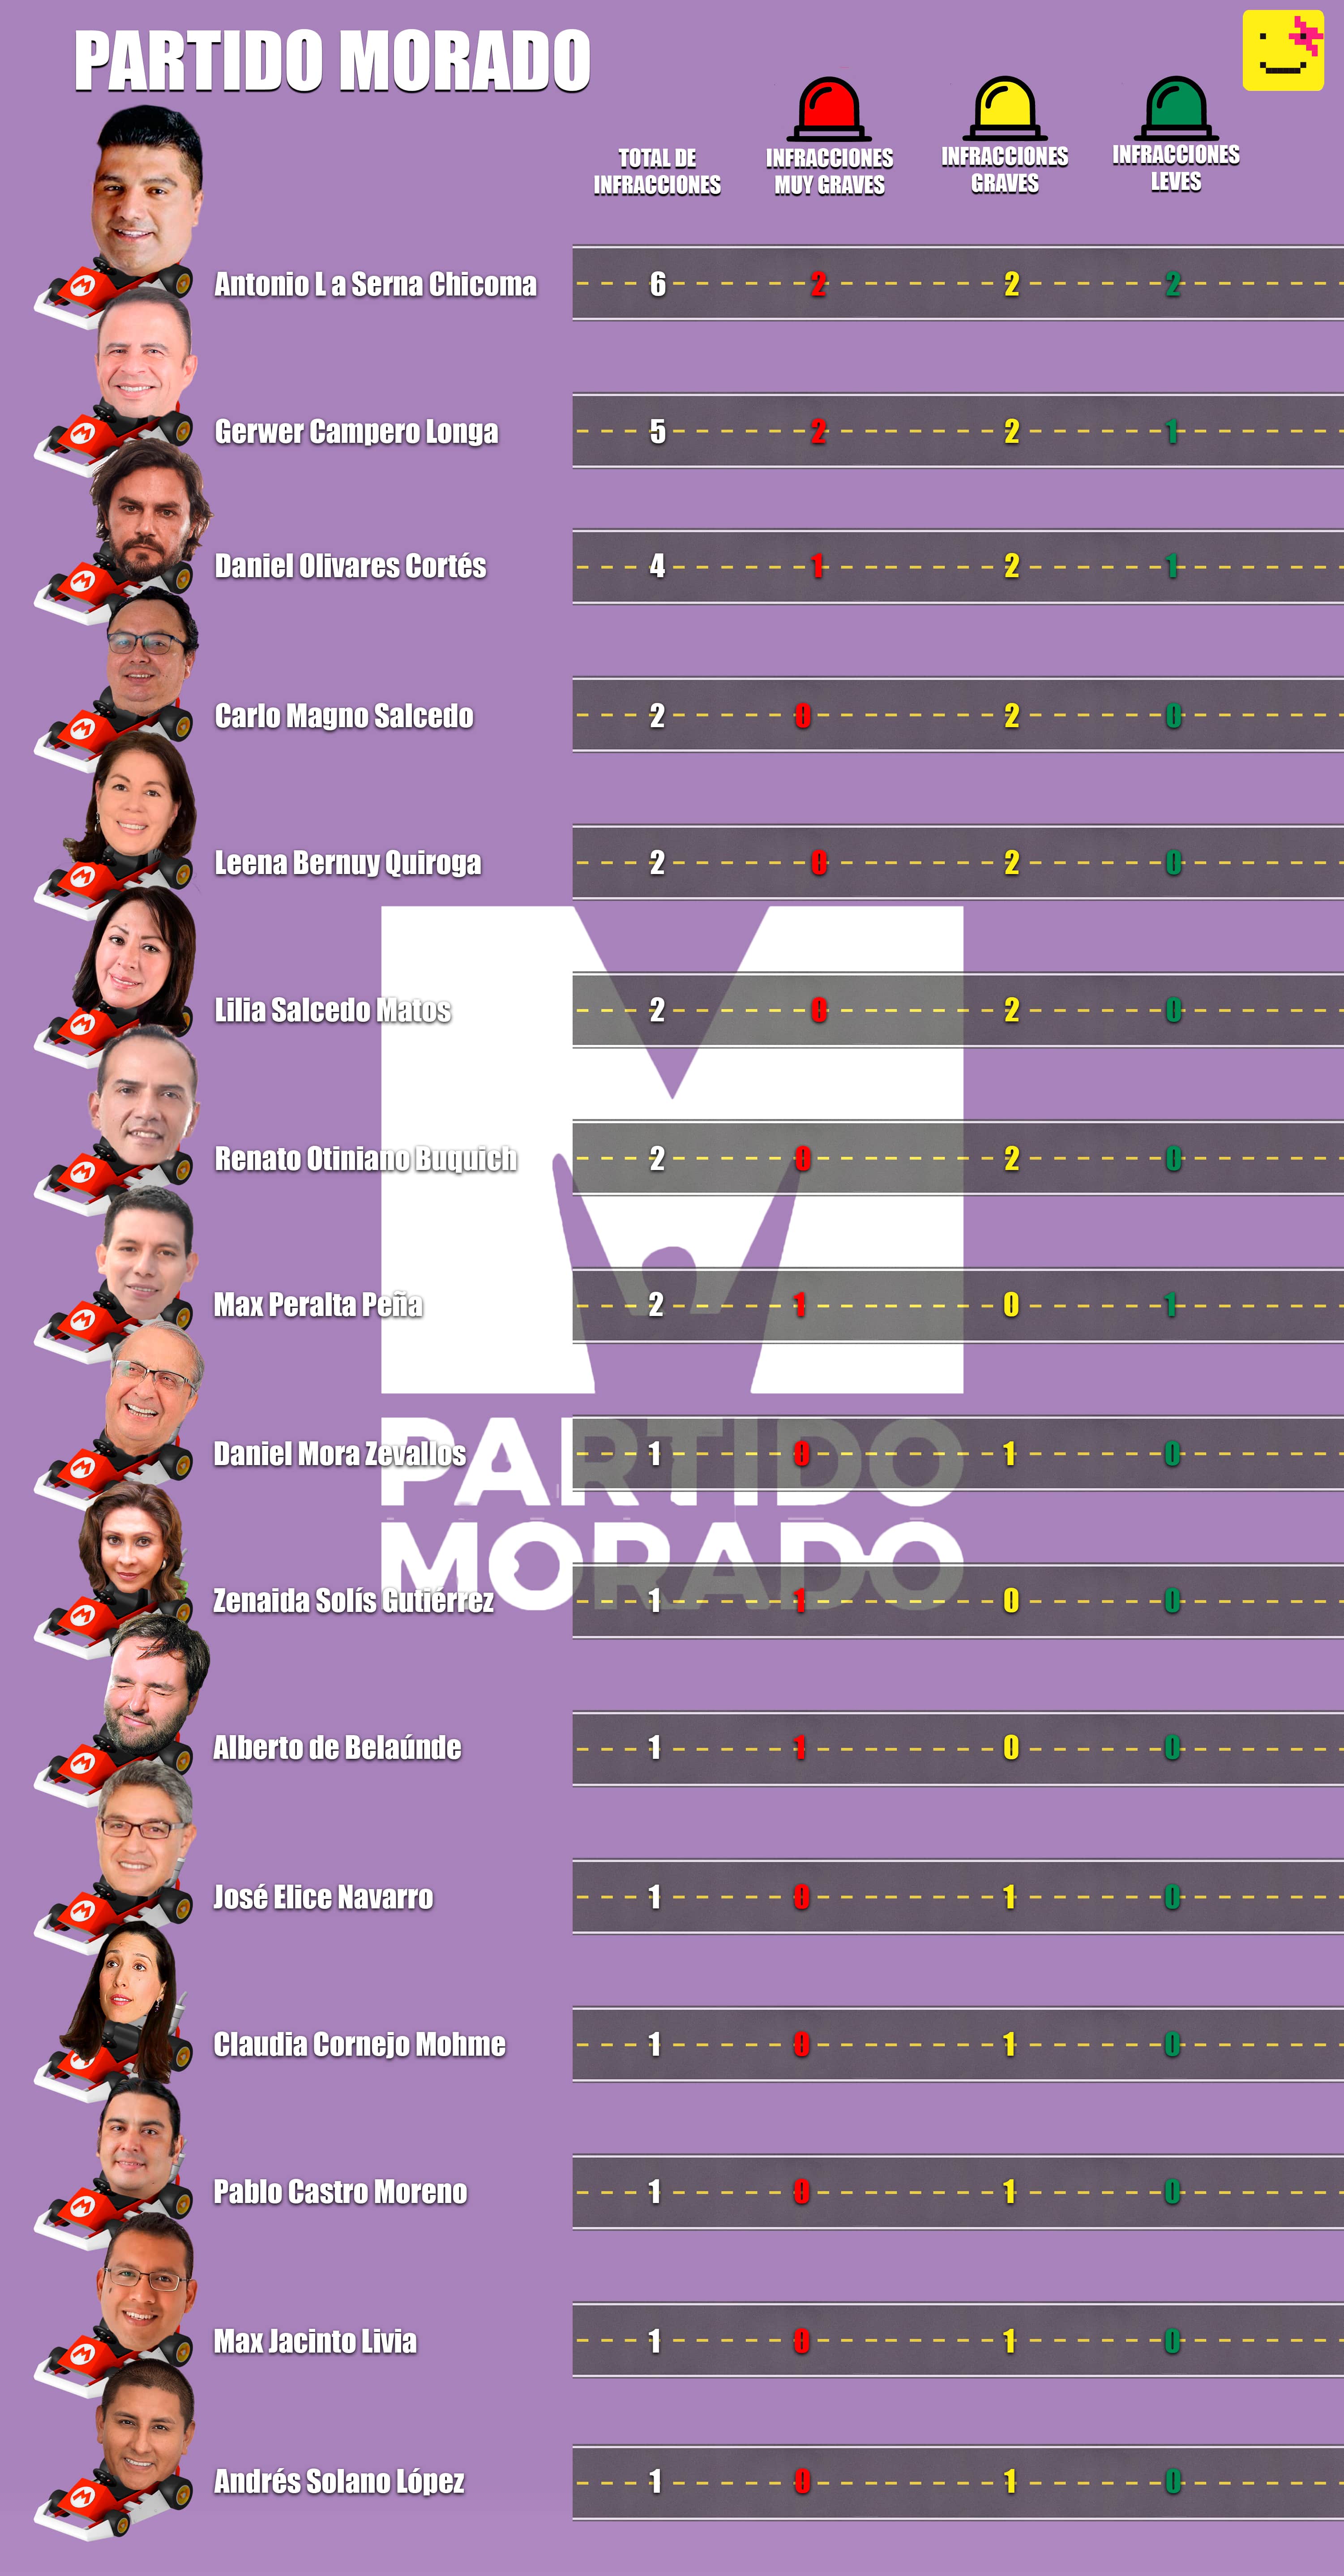 Mora también aparece en la lista. Formalmente aún continúa en campaña. Infografía: Útero.Pe basada en información del SAT